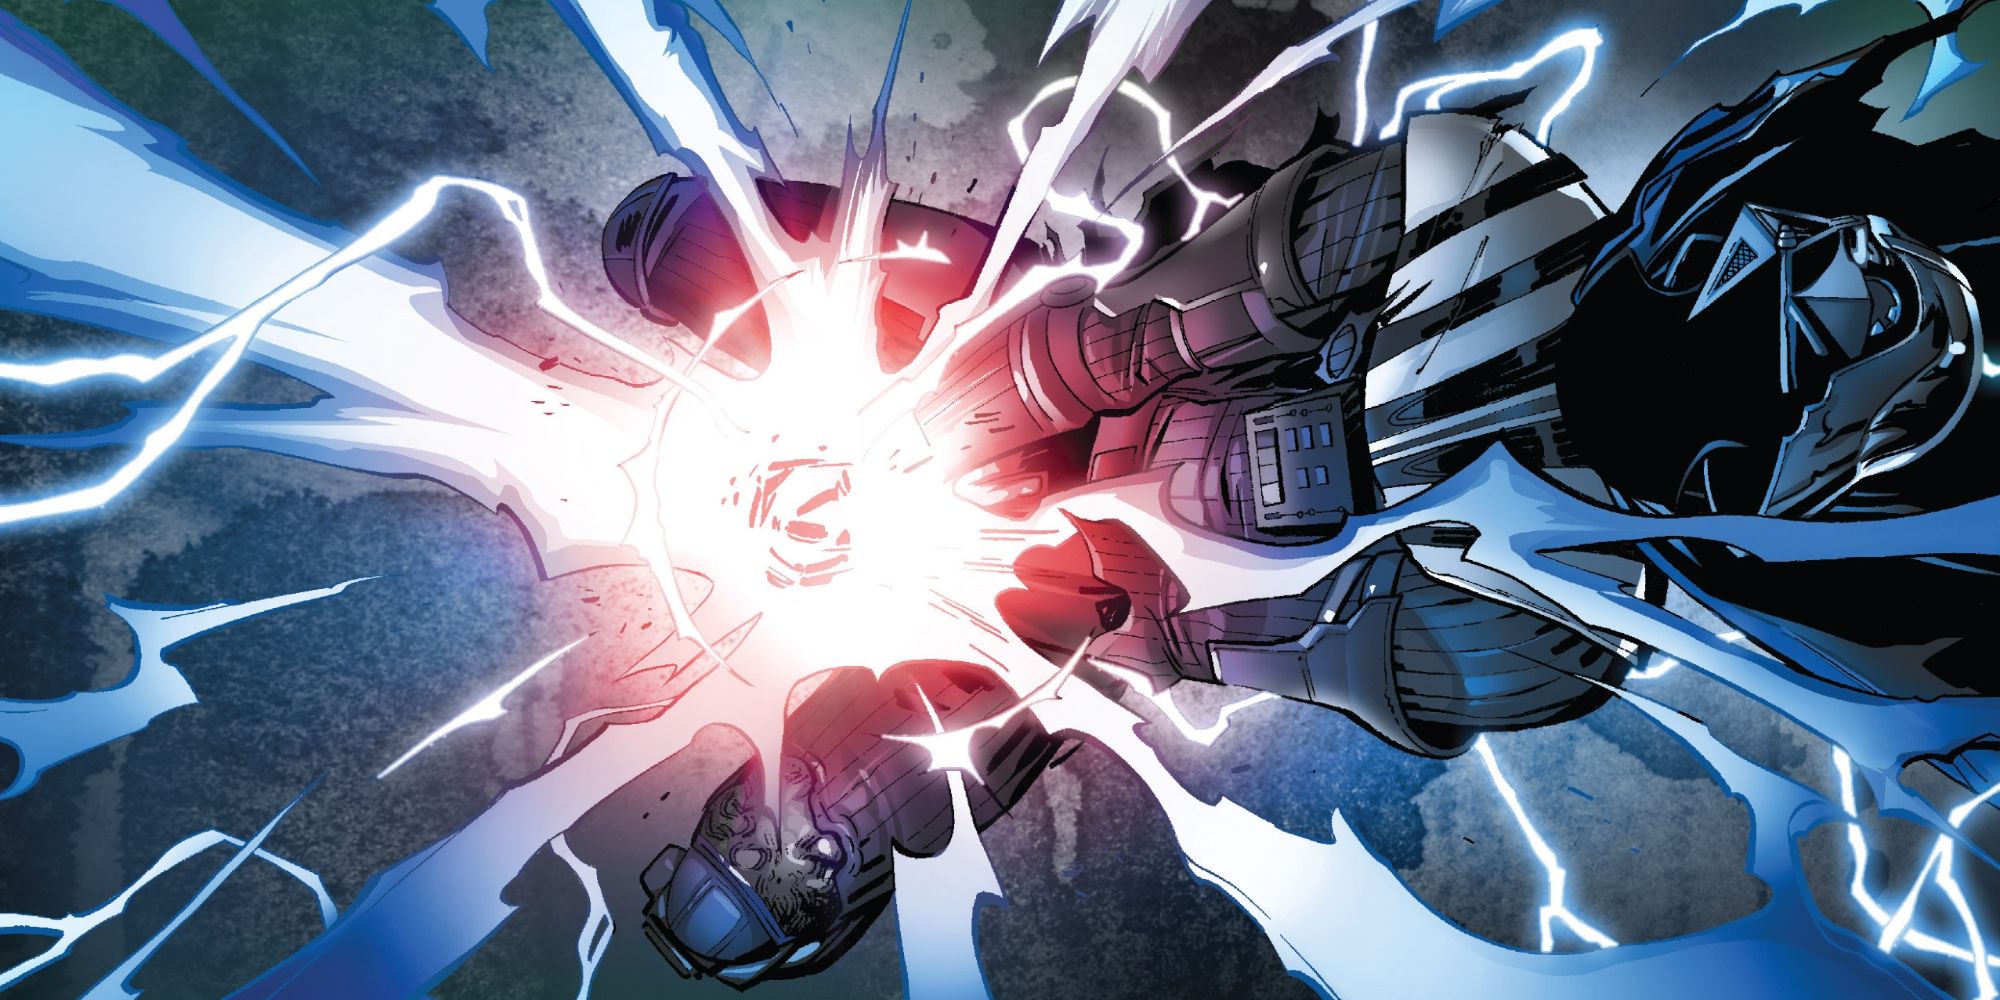 Darth Vader bleeding a Kyber crystal in Marvel's Darth Vader comics.